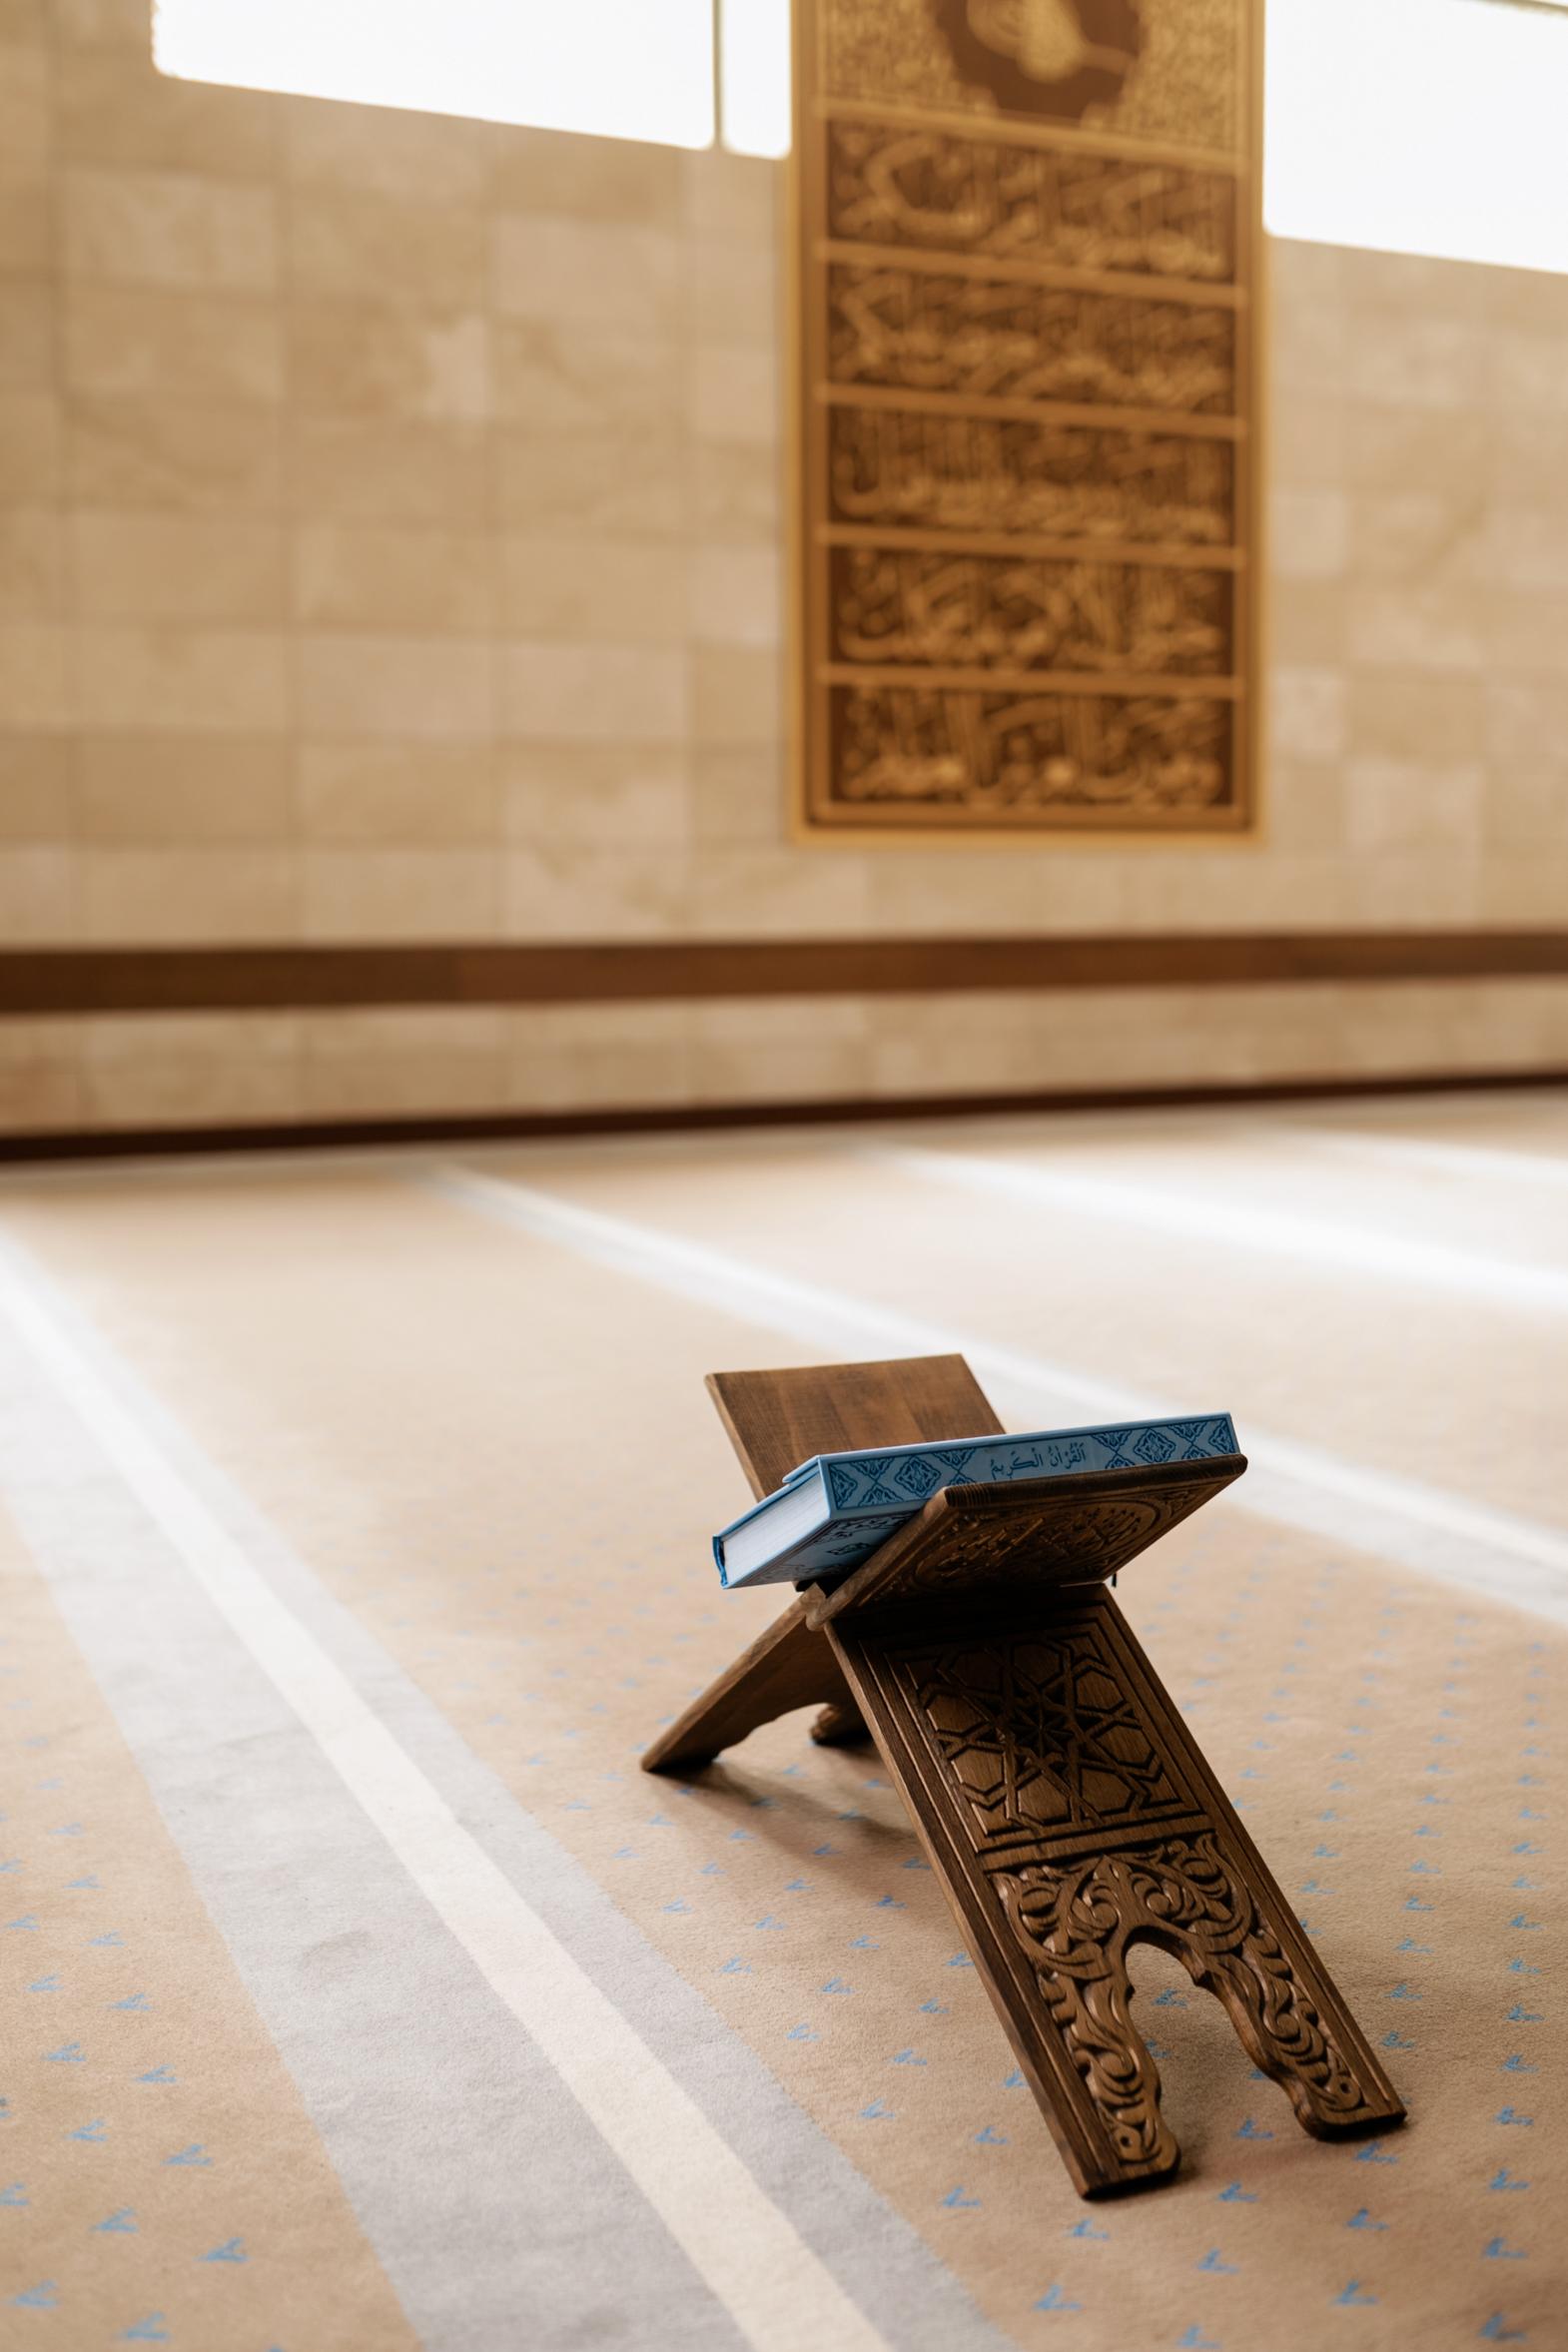 Rytuały i praktyki związane z koranem w codziennym życiu muzułmanina